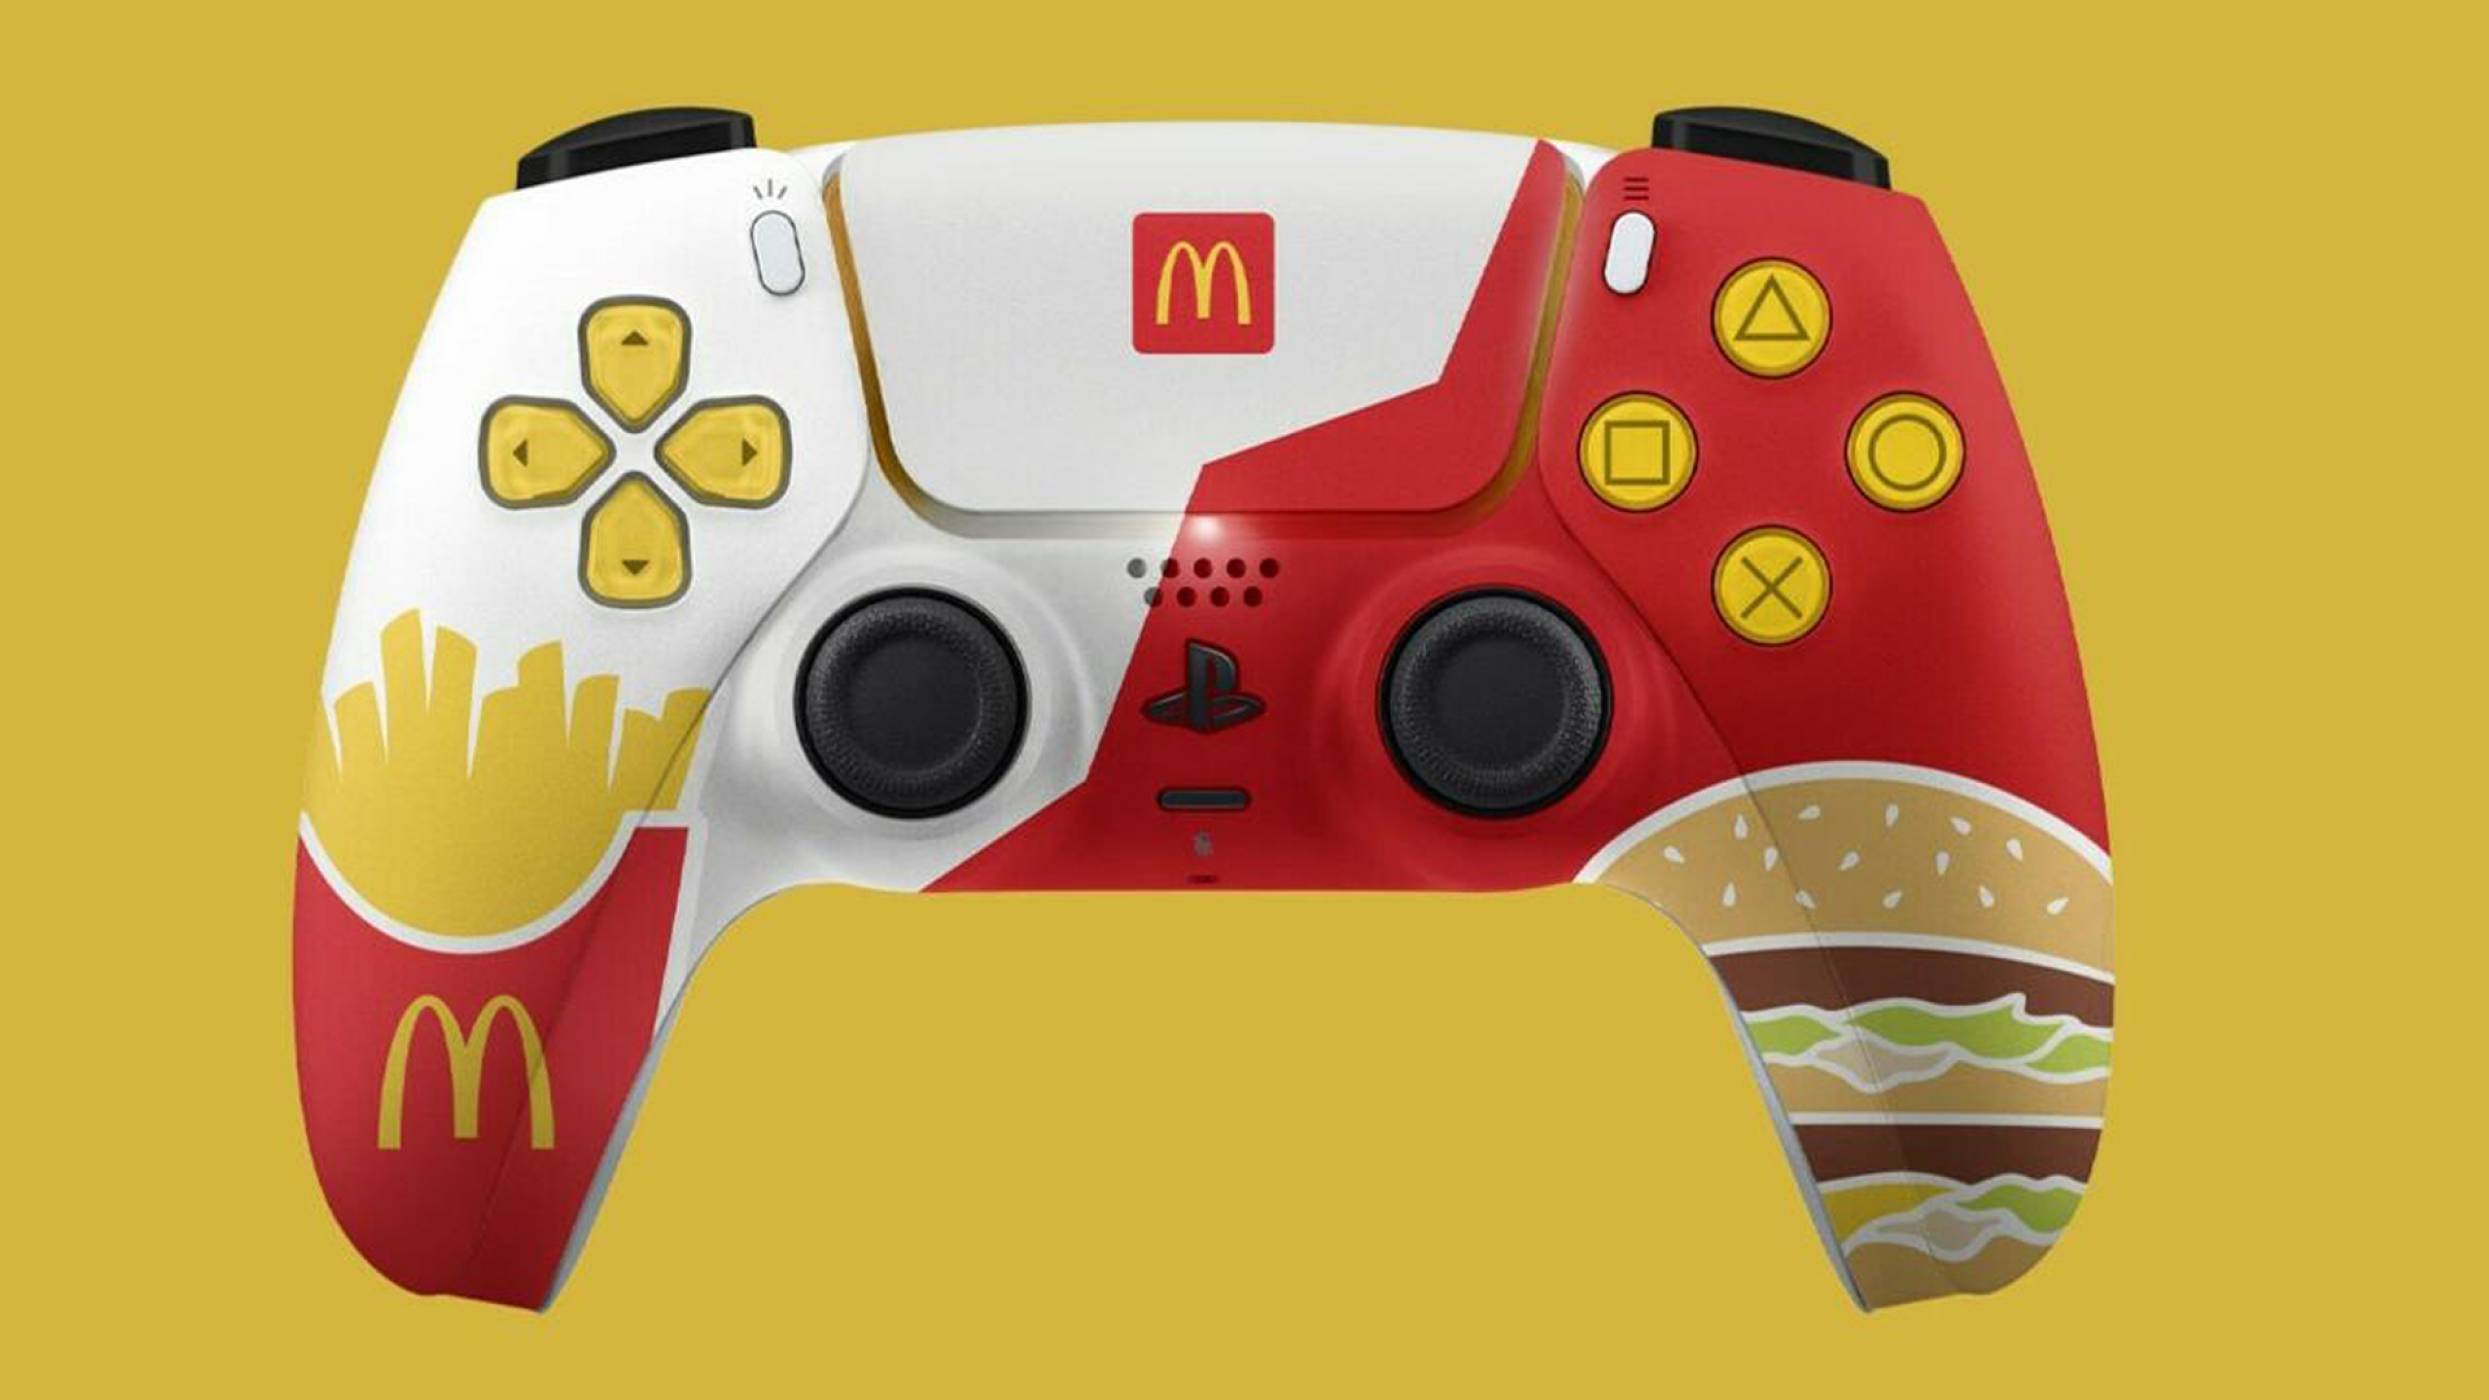 Този PS5 контролер от McDonald's е едновременно кичозен и вкусен